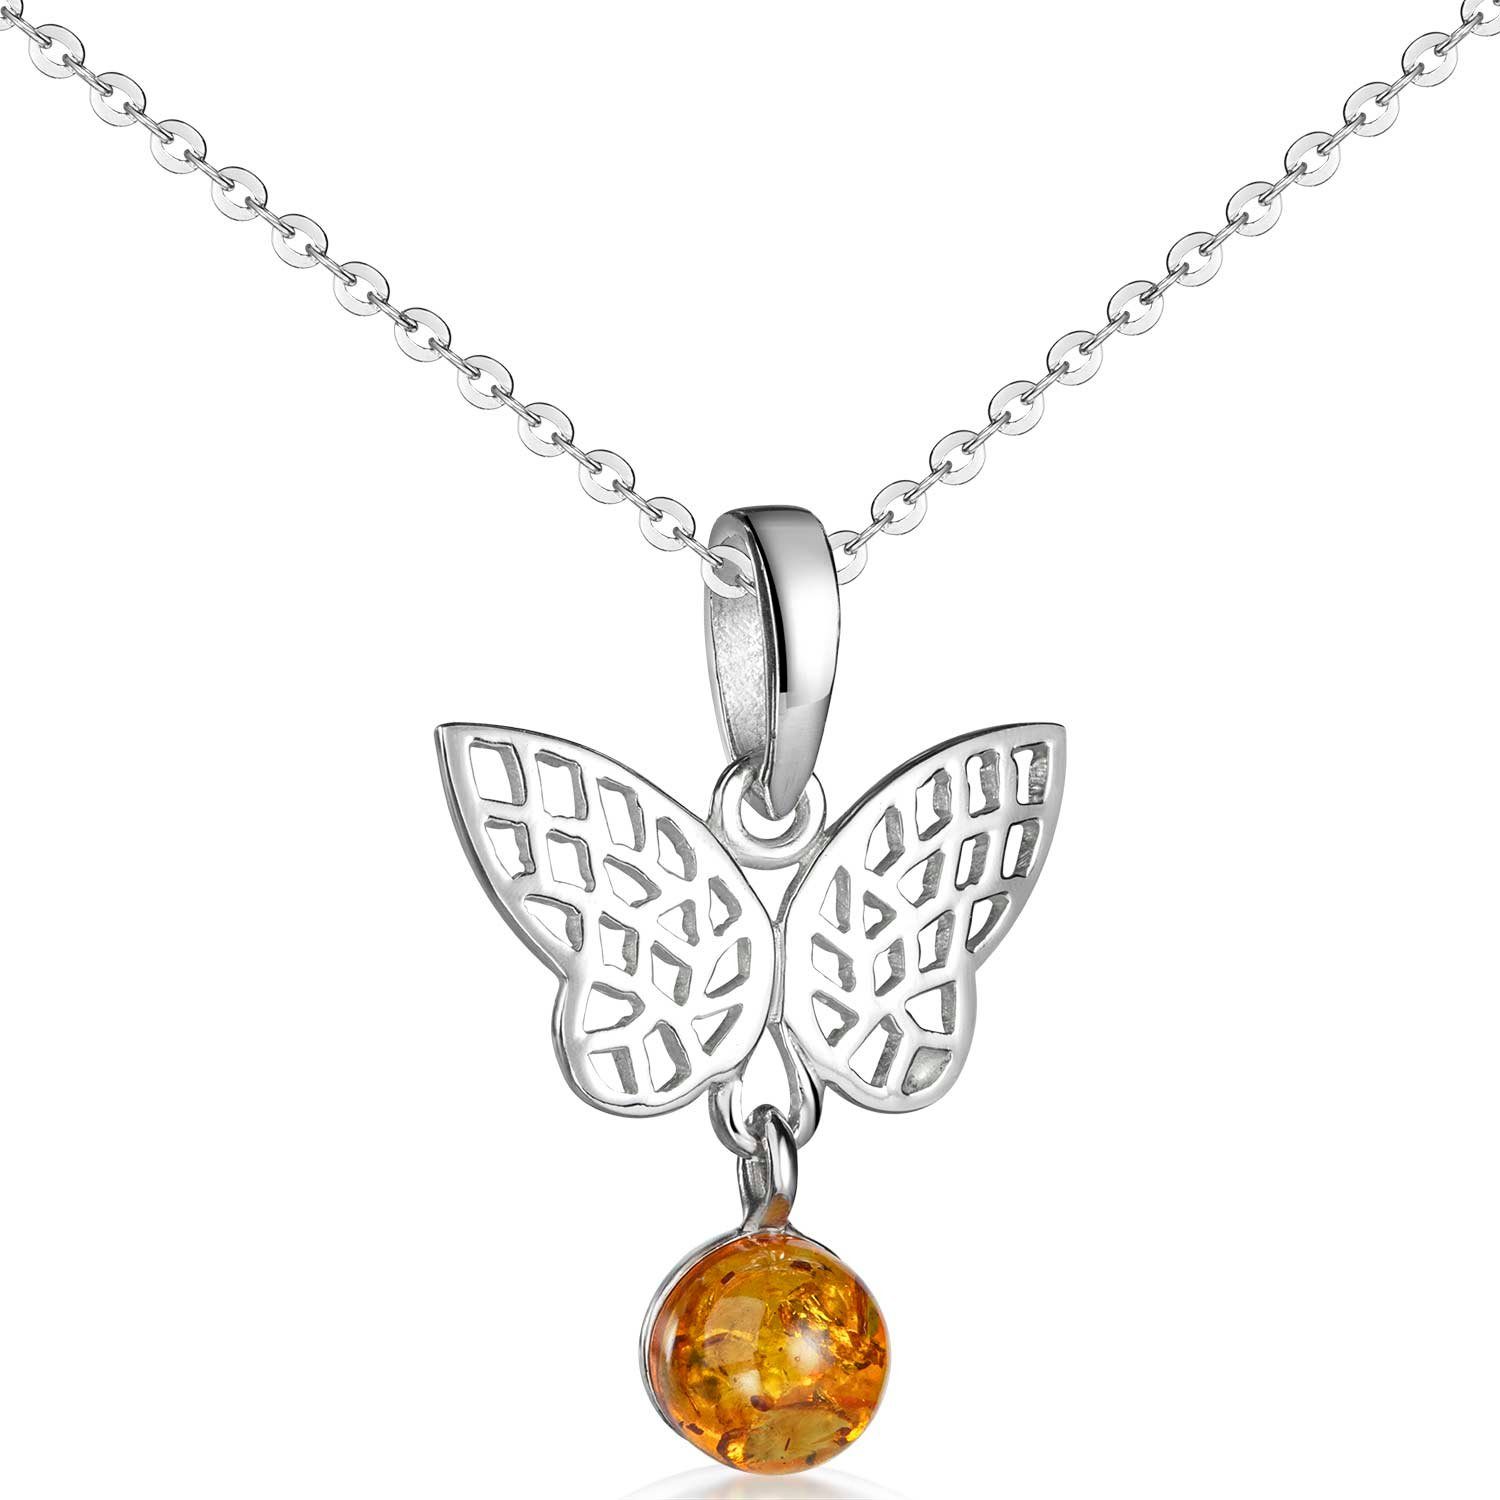 Materia Schmetterlingsanhänger Damen Silber Schmetterling Bernstein Braun Orange KA-487, 925 Sterling Silber